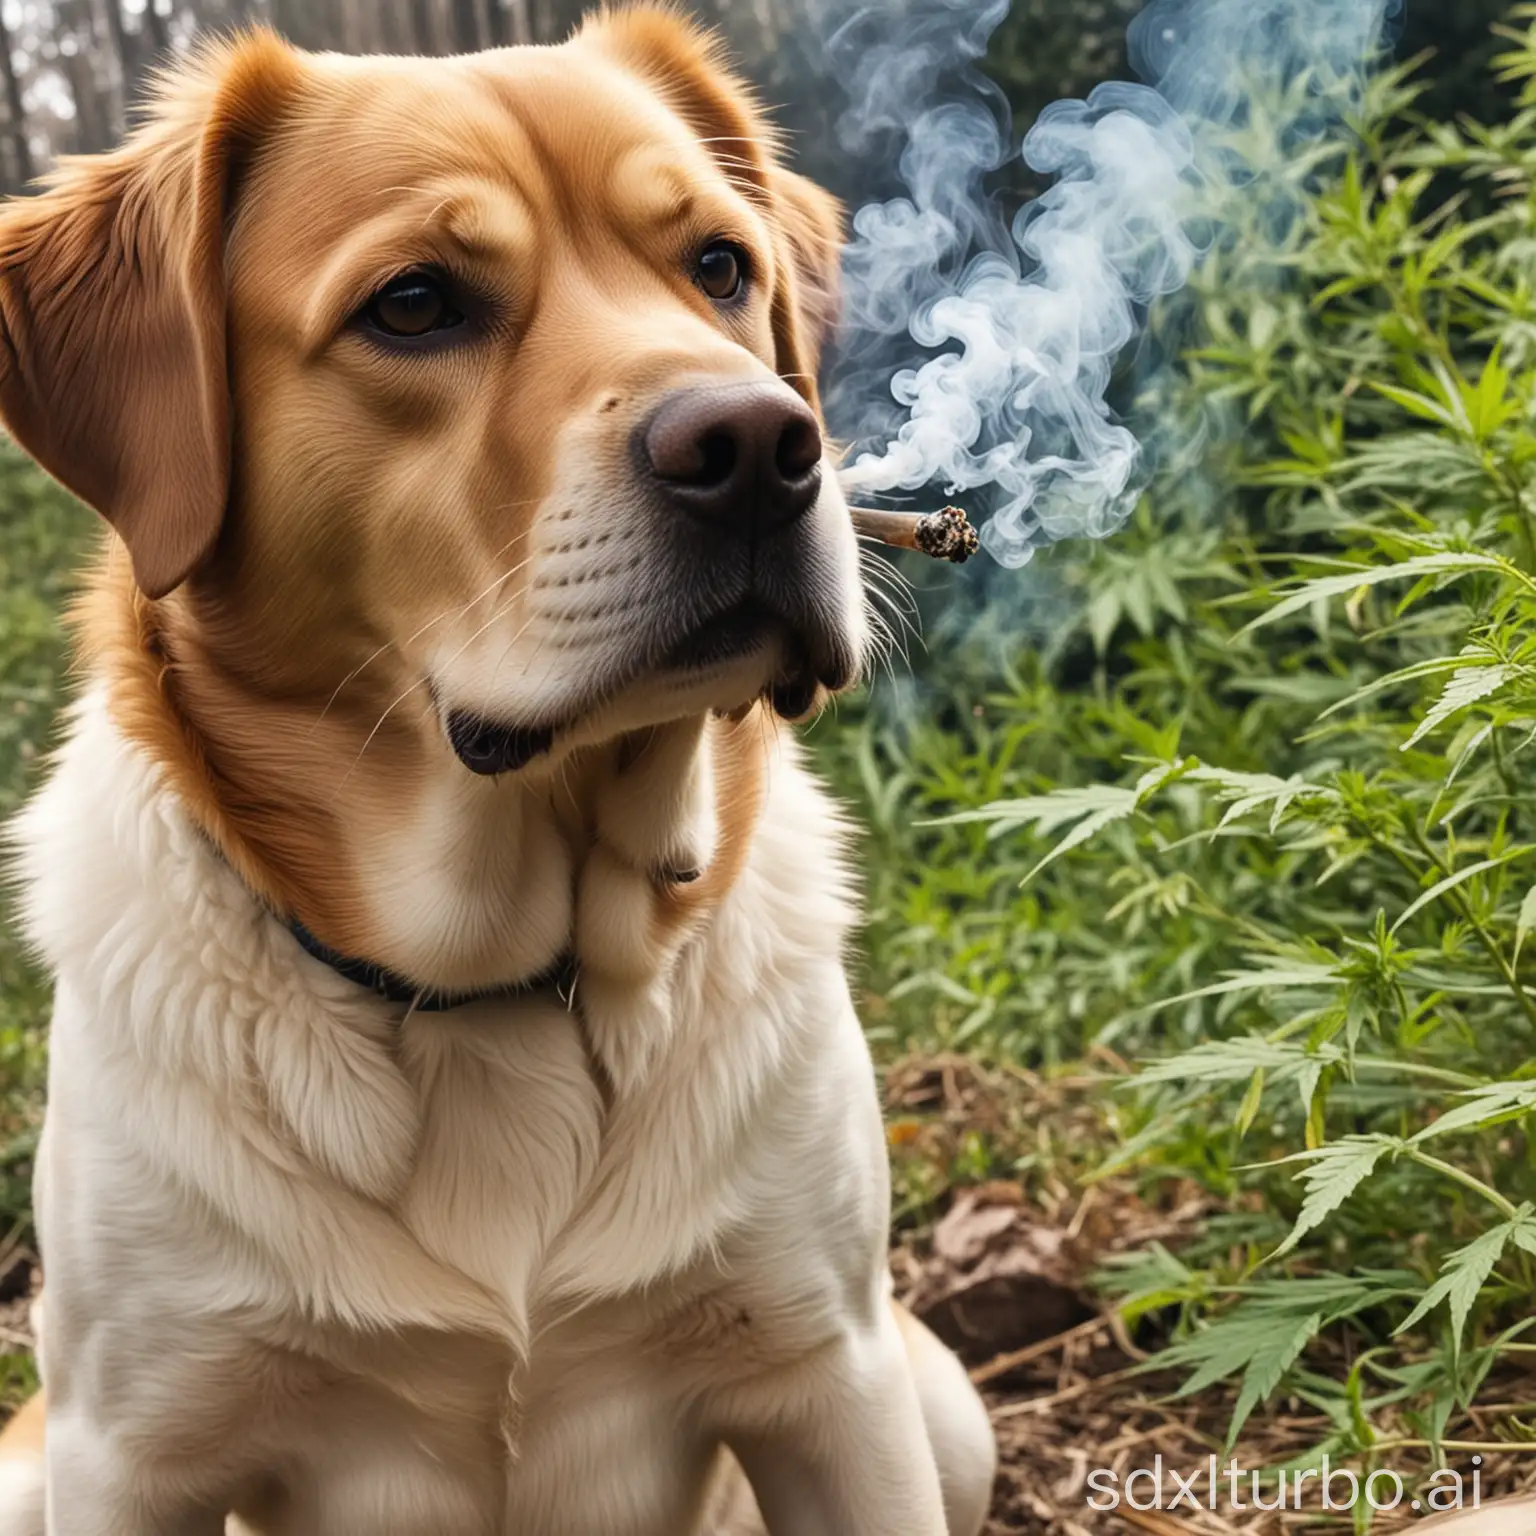 Hund raucht cannabis 
